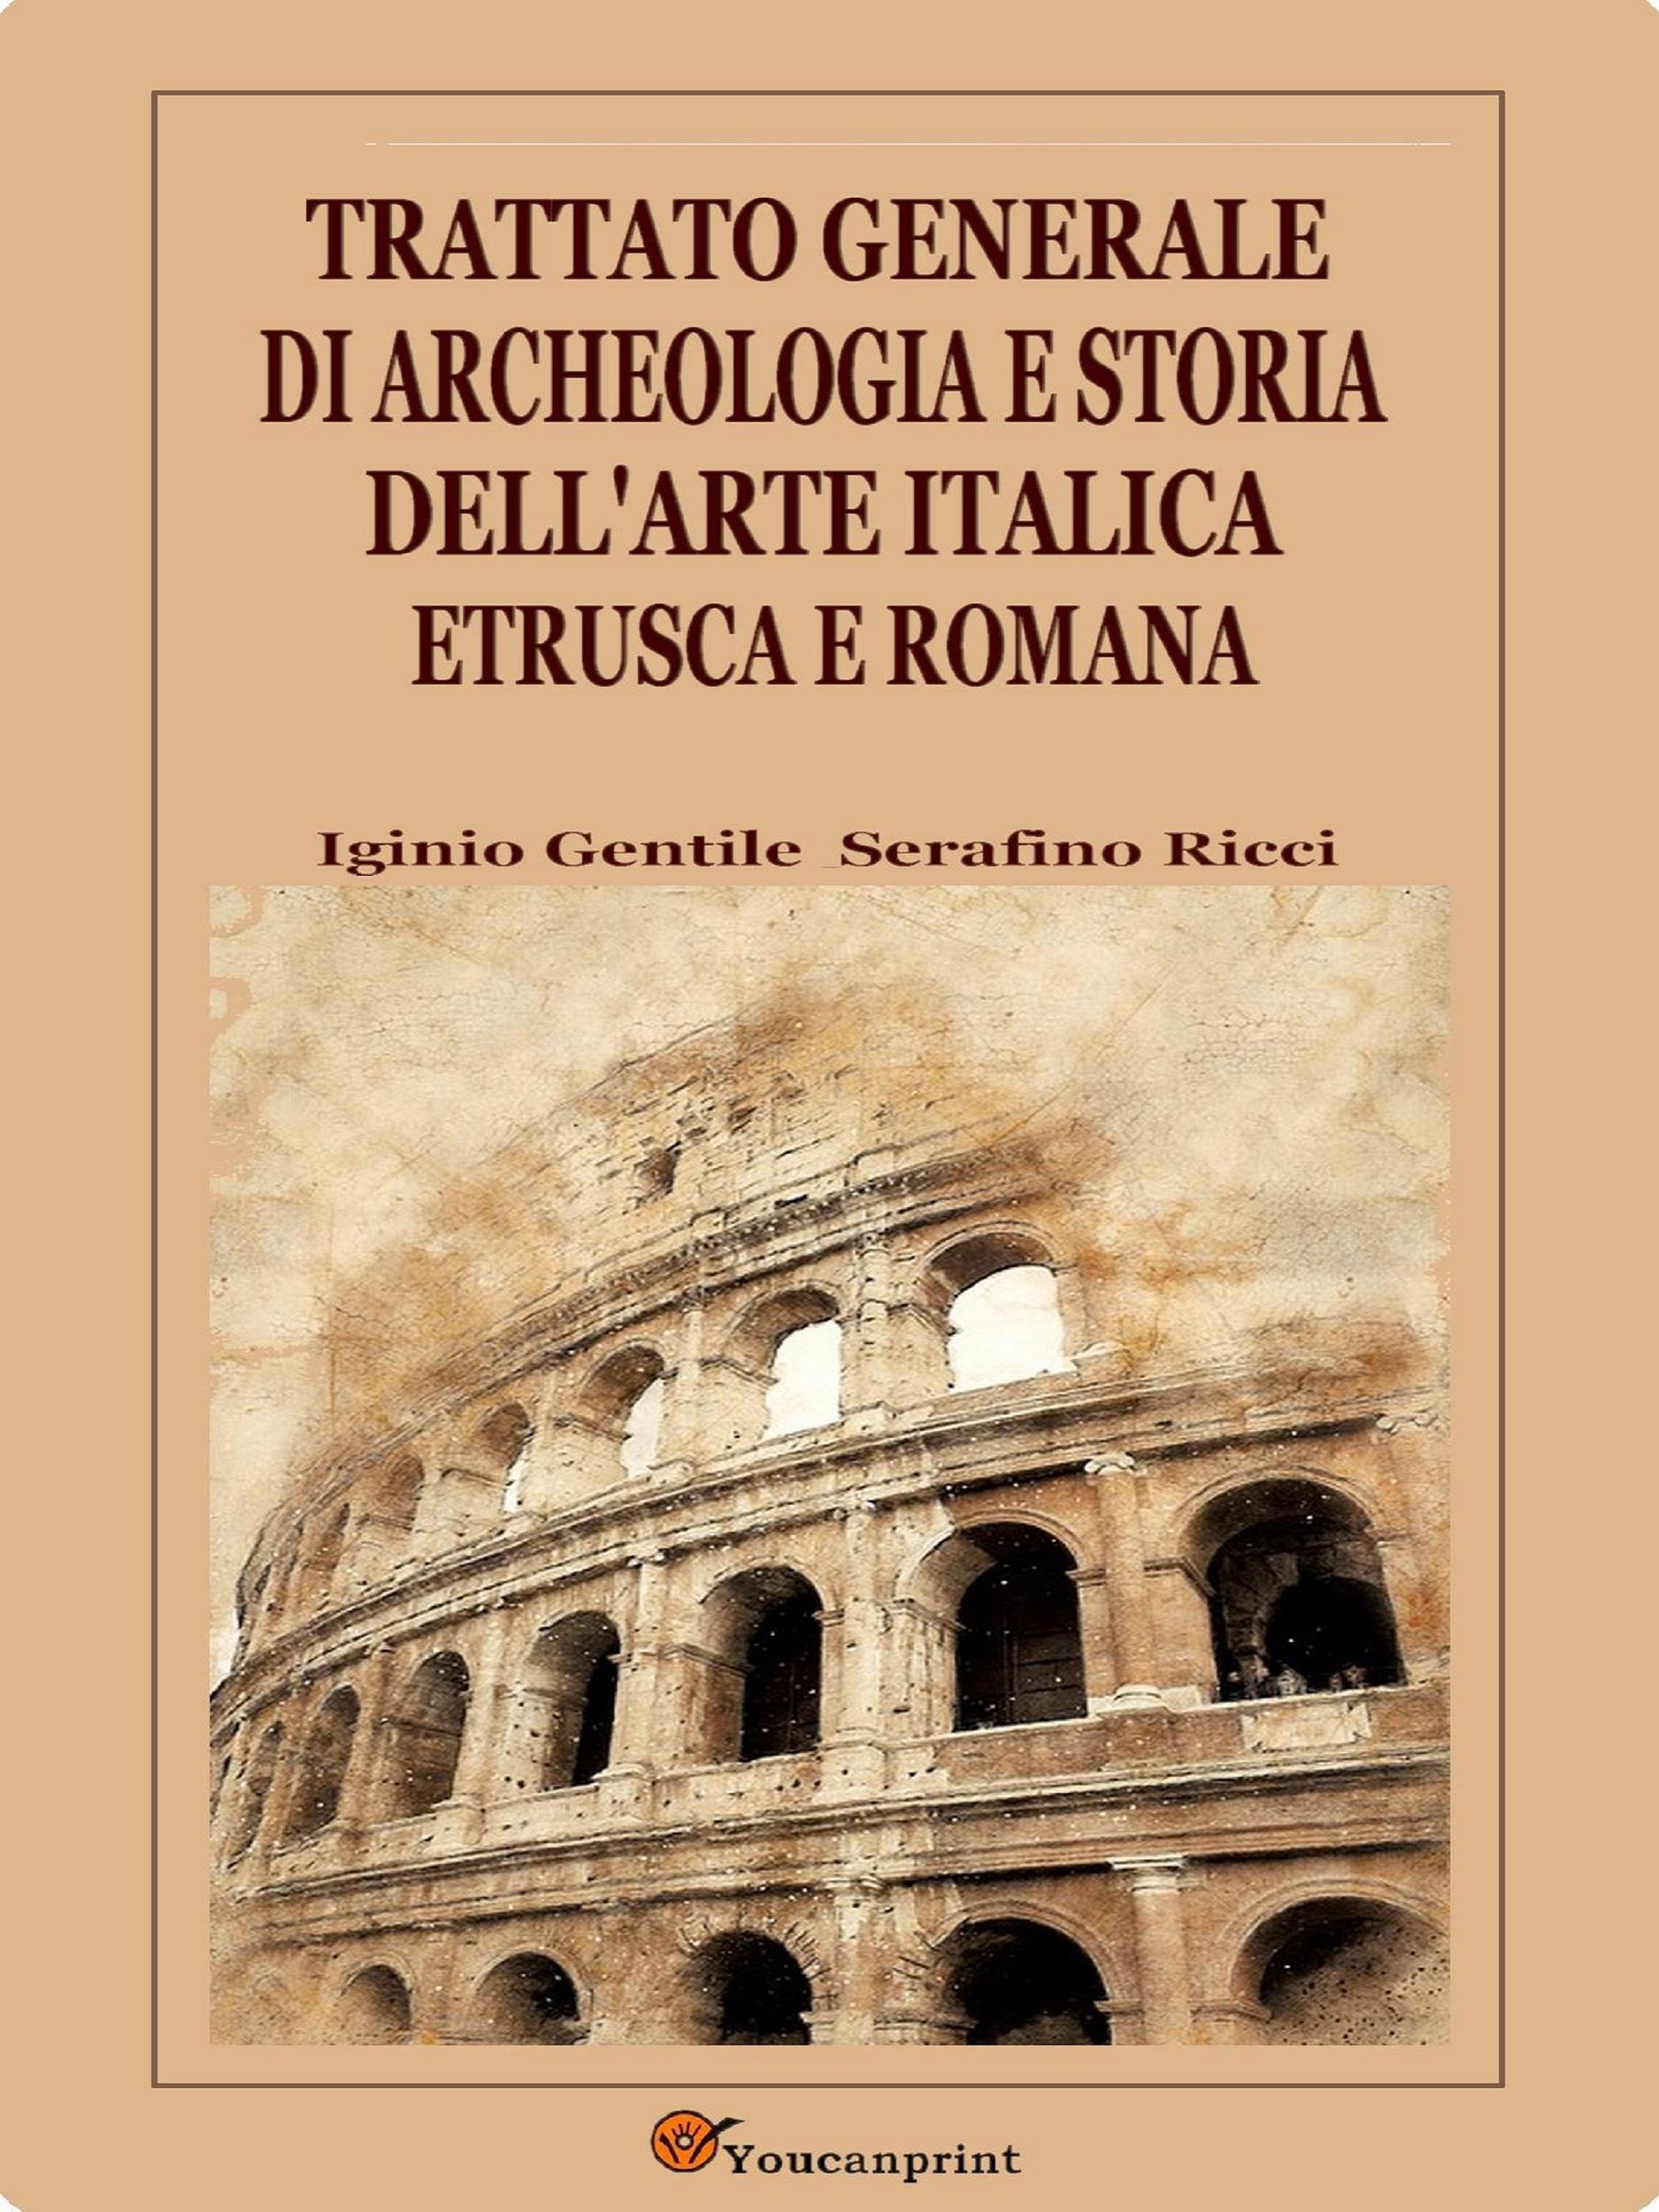 Trattato generale di archeologia e storia dell'arte italica, etrusca e romana